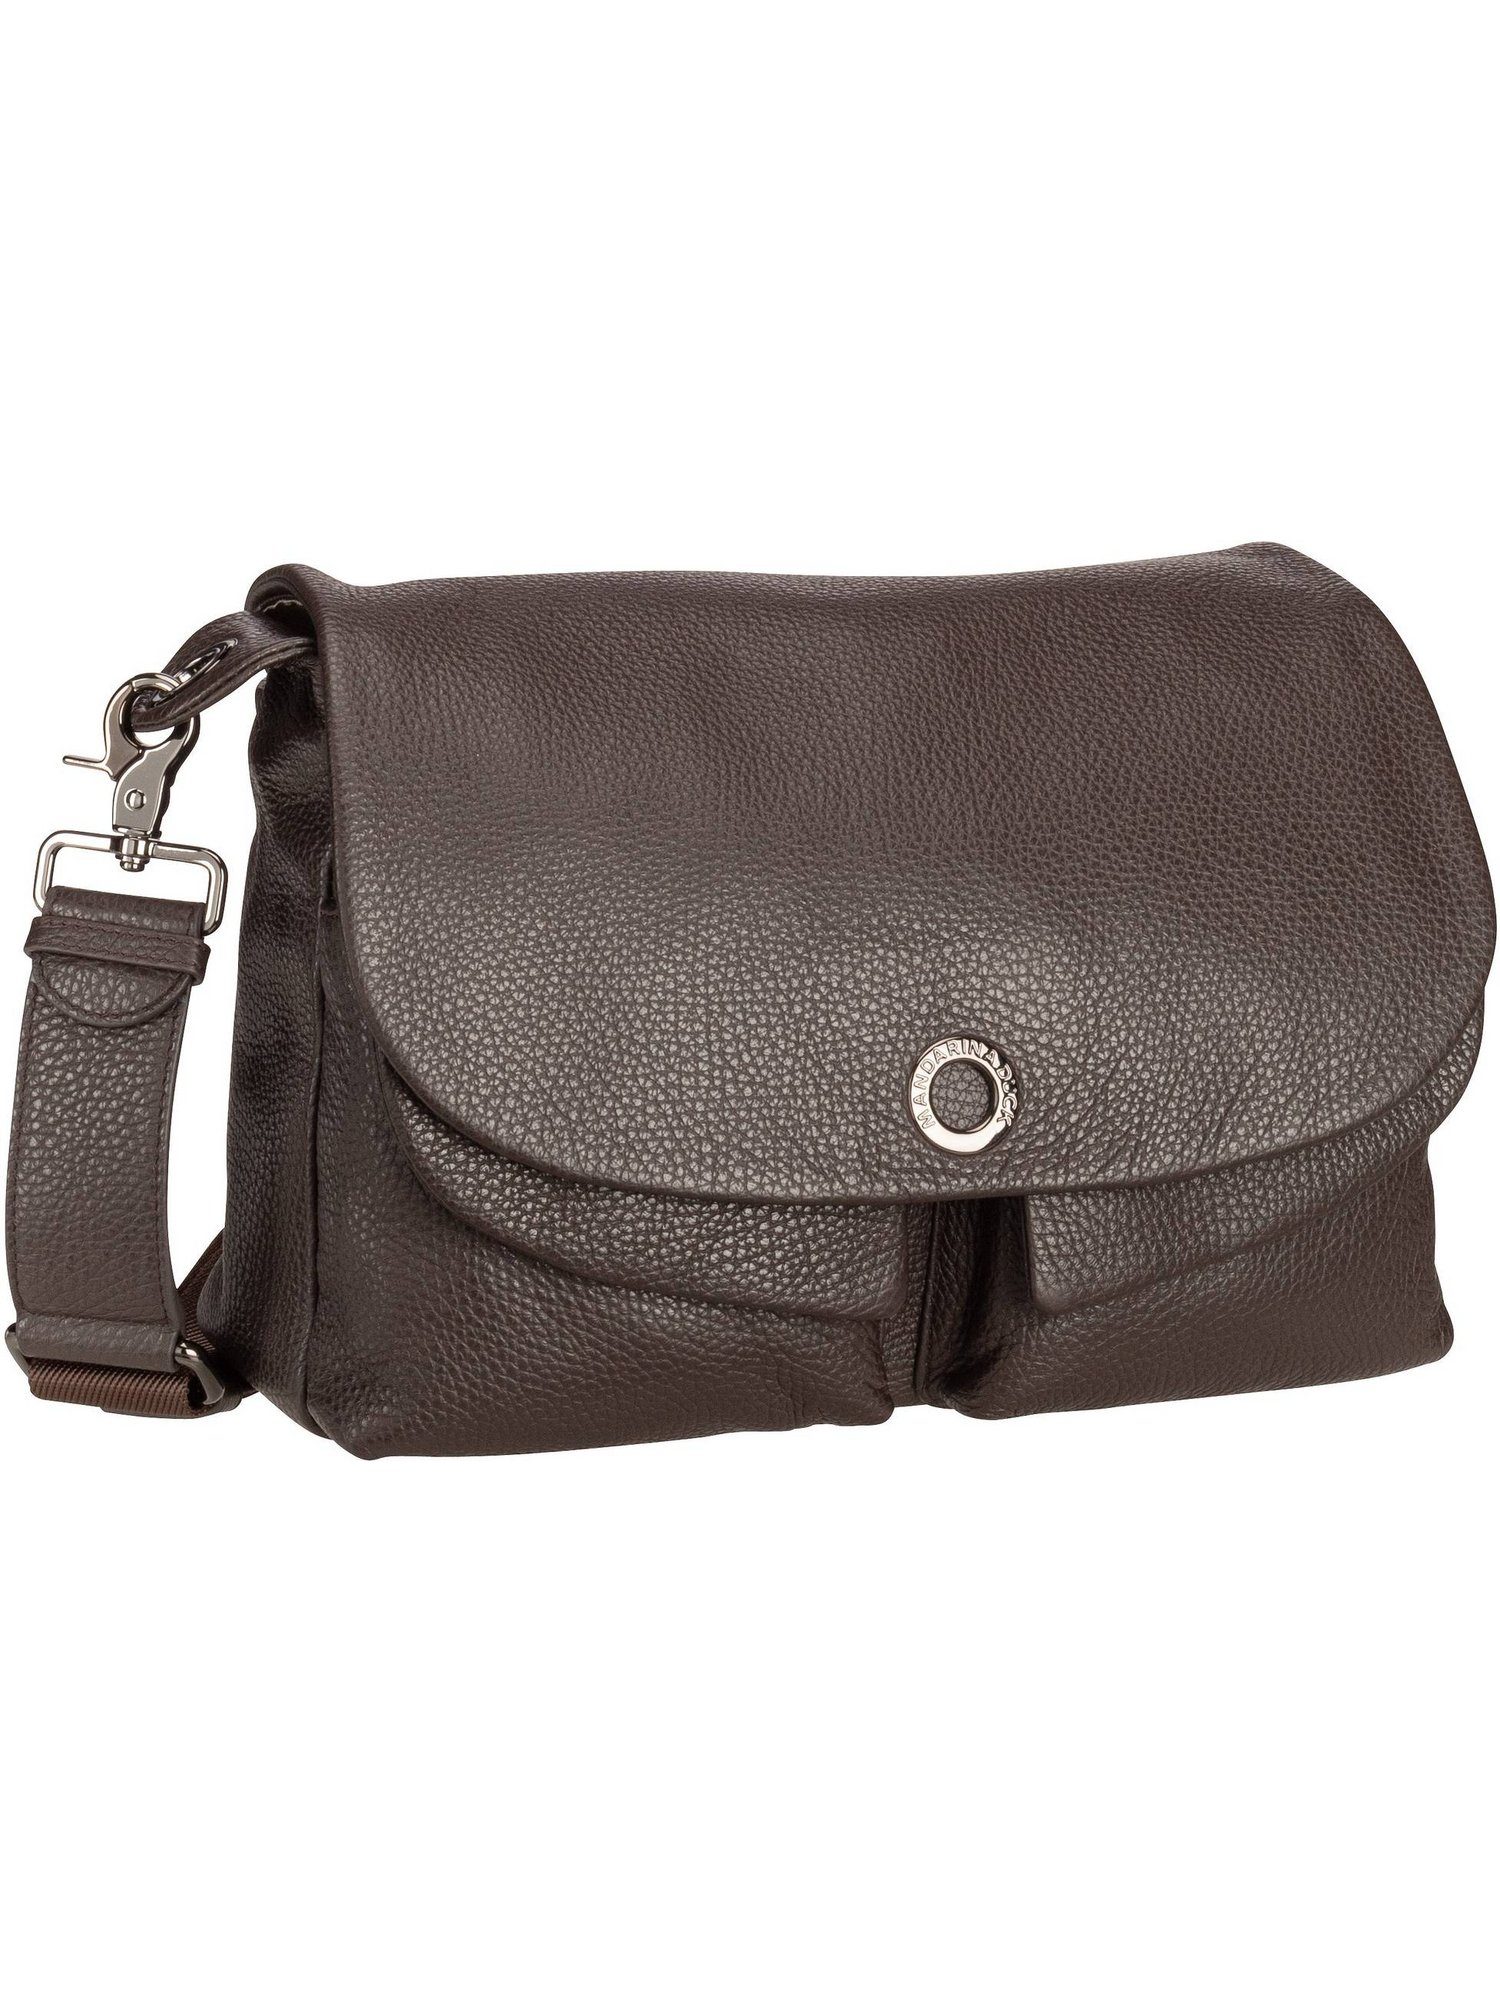 Duck Leather Shoulder Bag FZT23, Bag Mellow Umhängetasche Mandarina Mole Crossbody